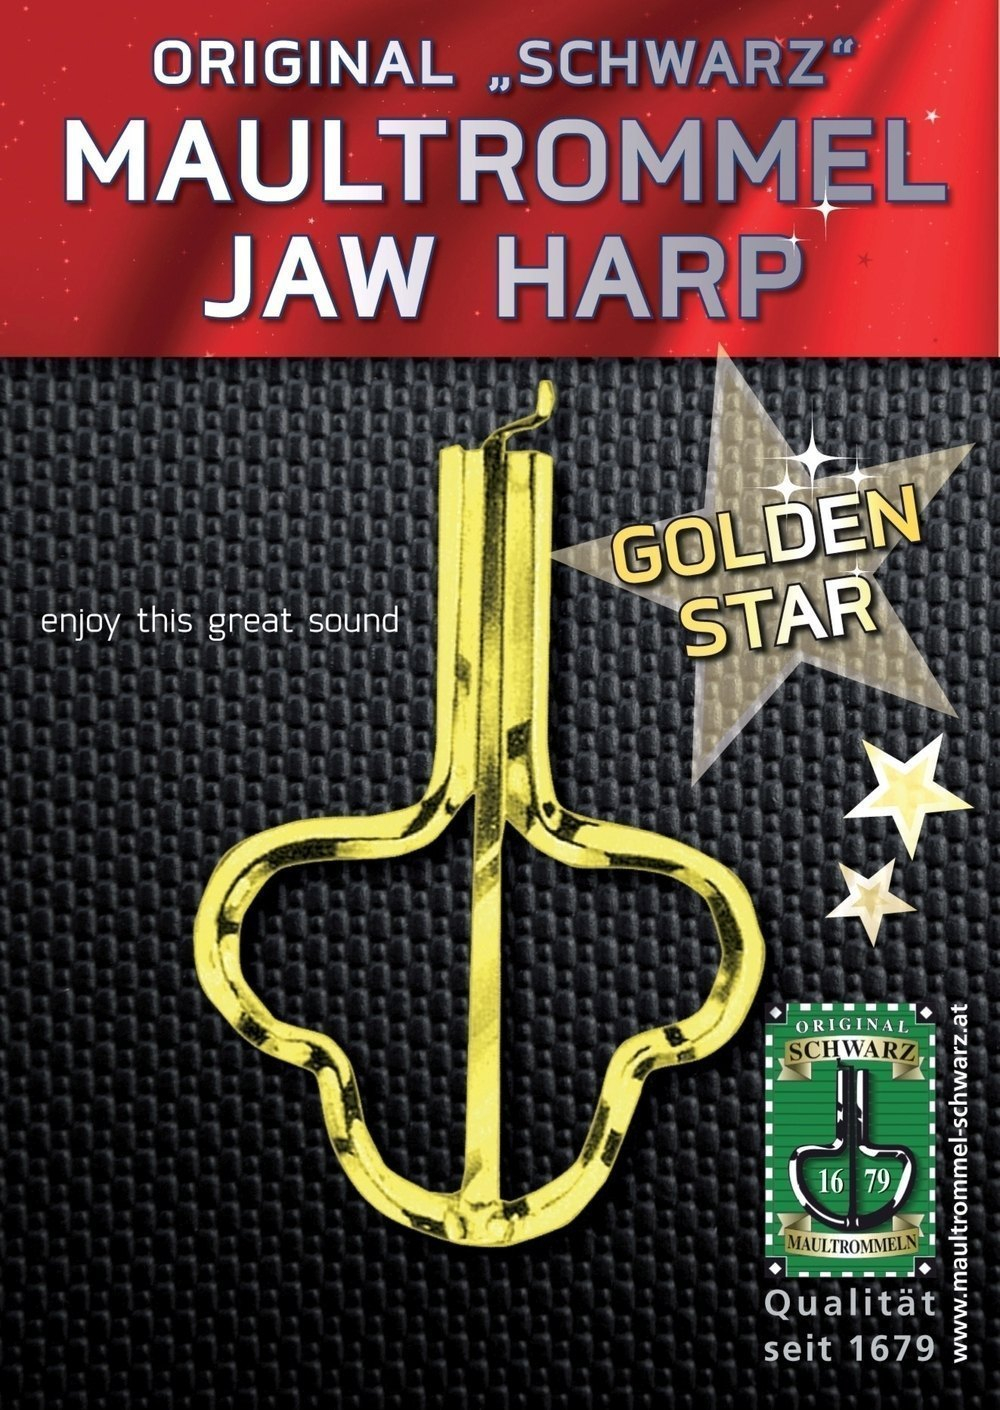 Orig. Schwarz Jew's-harp Golden Star 82mm, No. 15